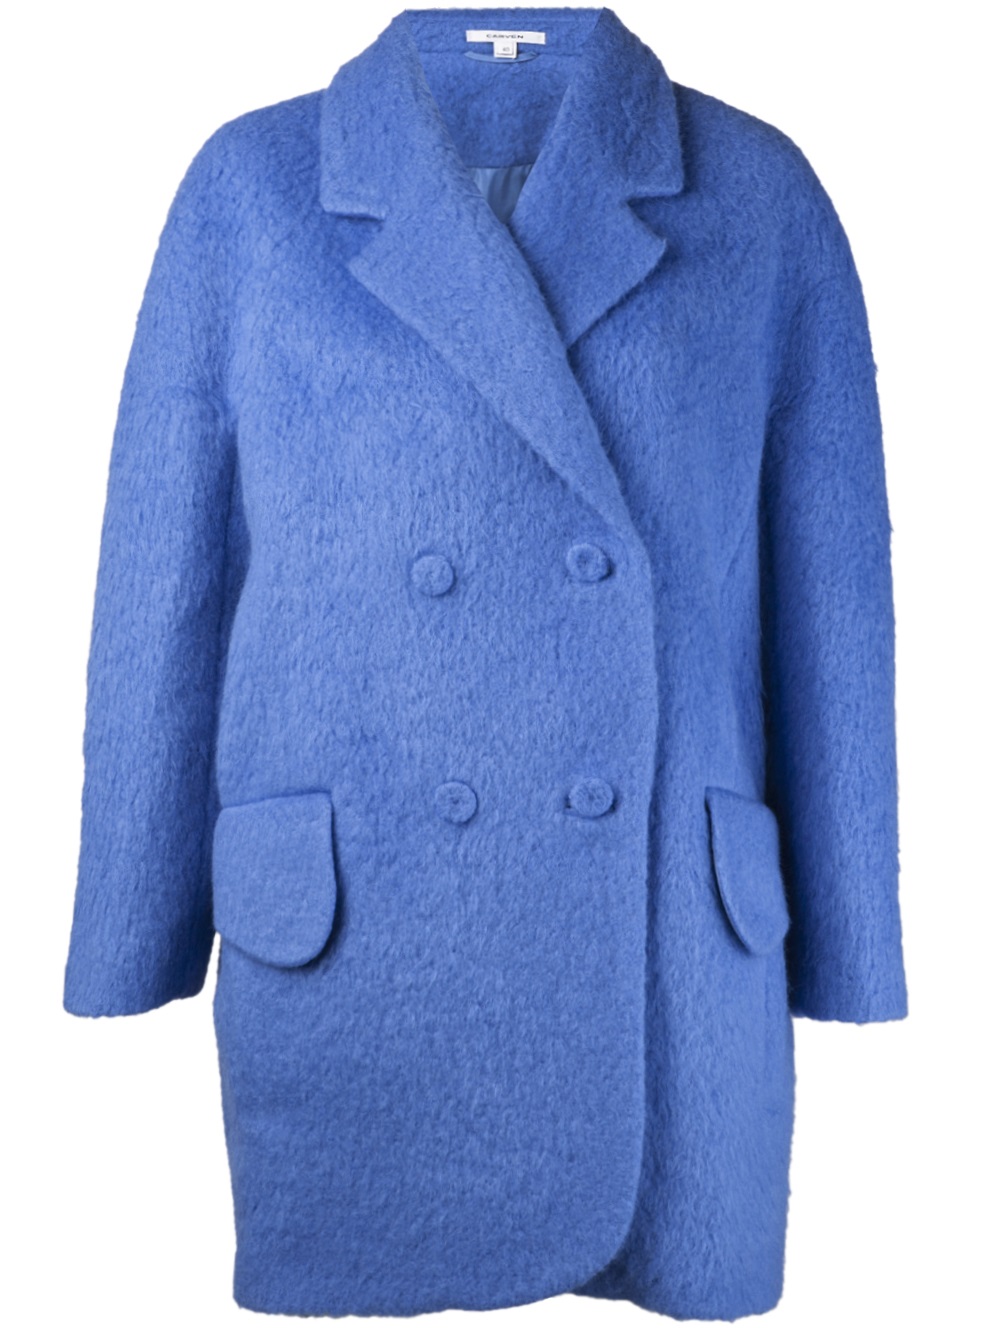 Lyst - Carven Hairy Drape Coat in Blue